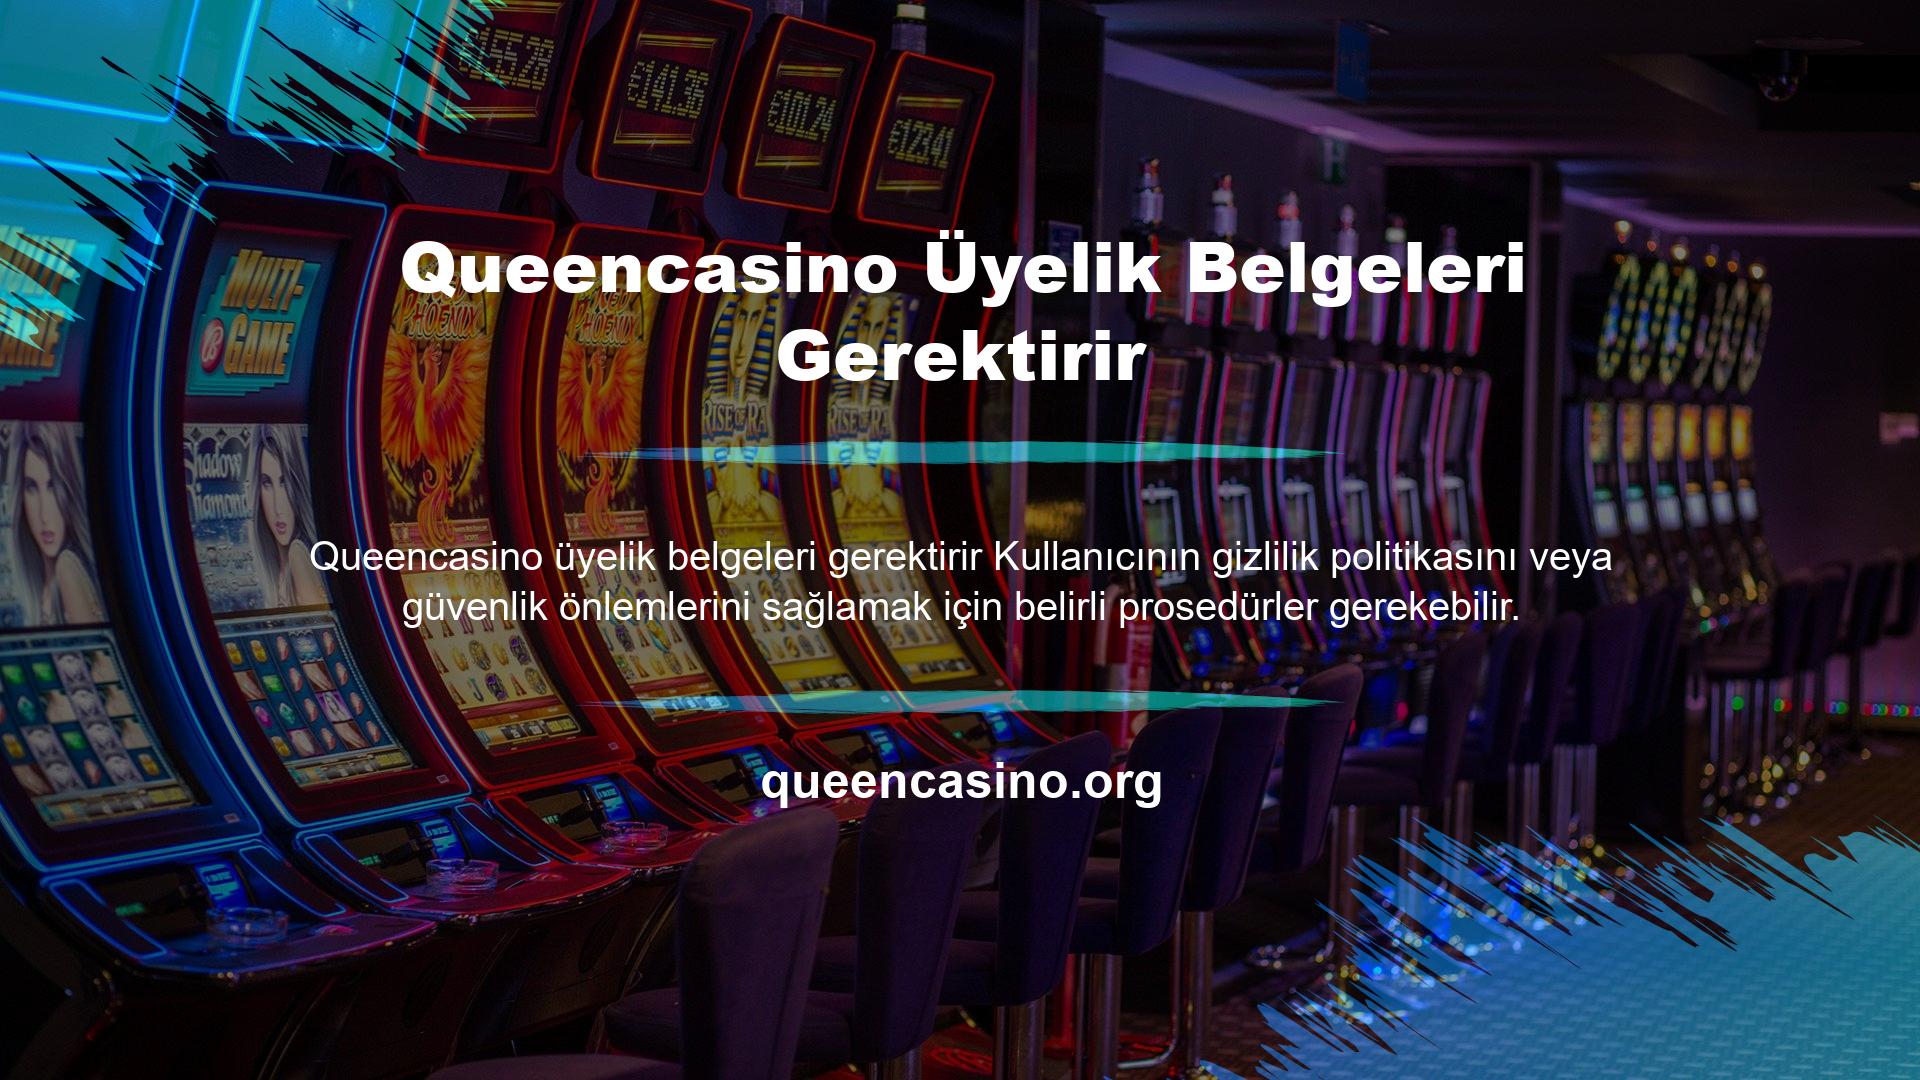 Queencasino maç biletleri veya diğer bahis seçenekleri için bu siteye üyelik gerekmektedir